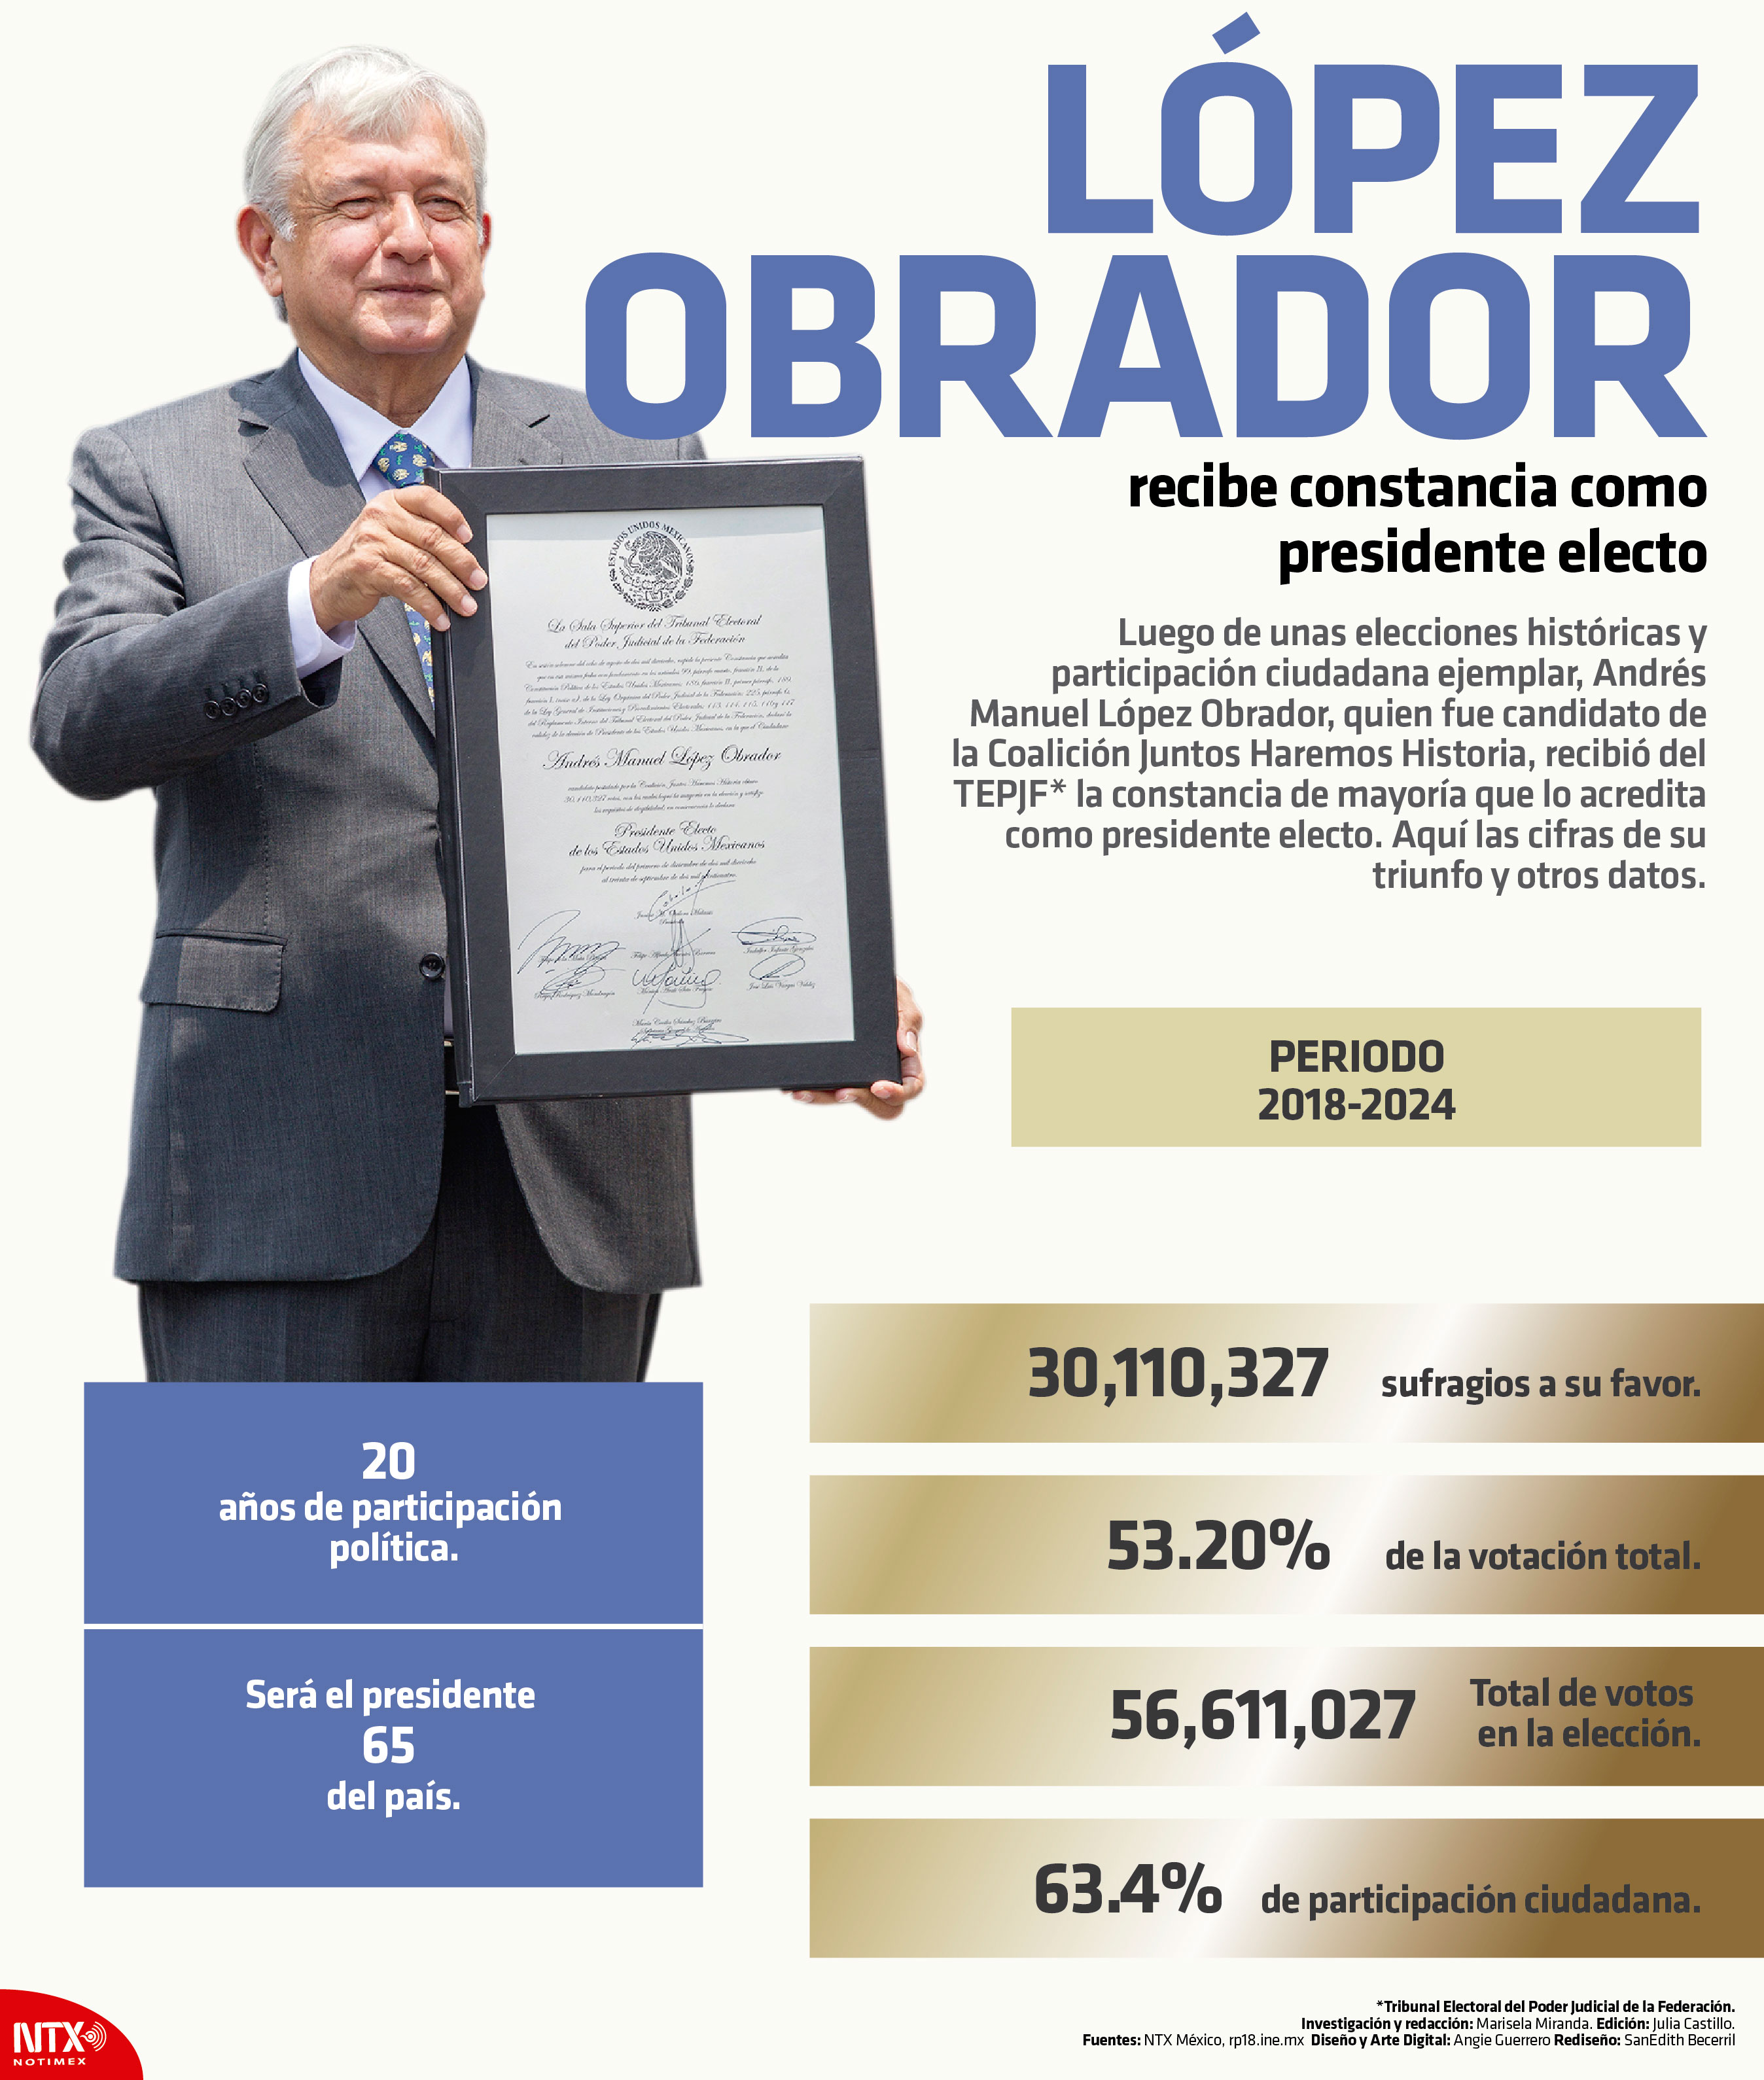 Lpez Obrador recibe constancia como presidente electo